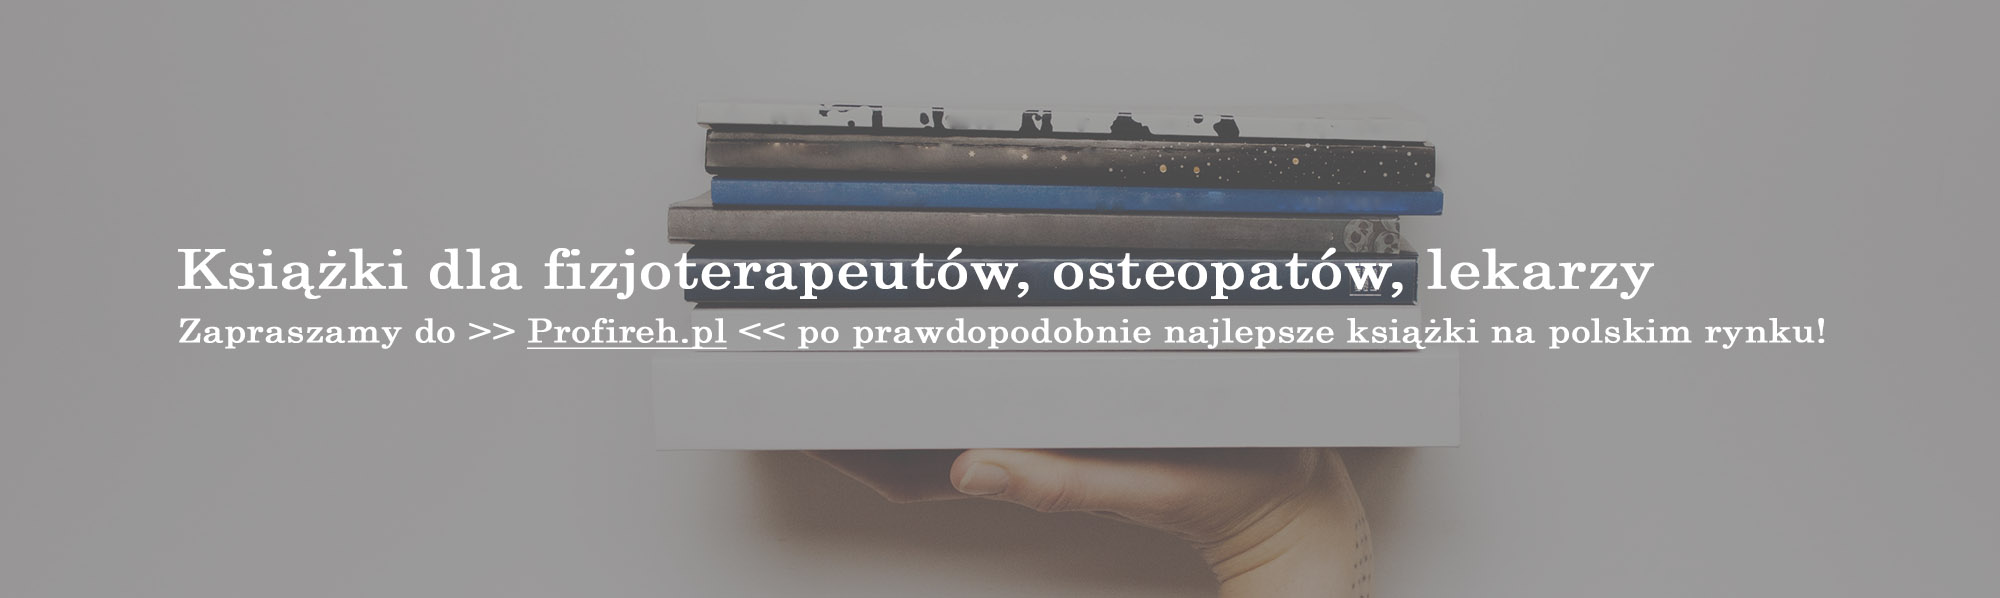 Książki dla fizjoterapeutów, osteopatów, lekarzy